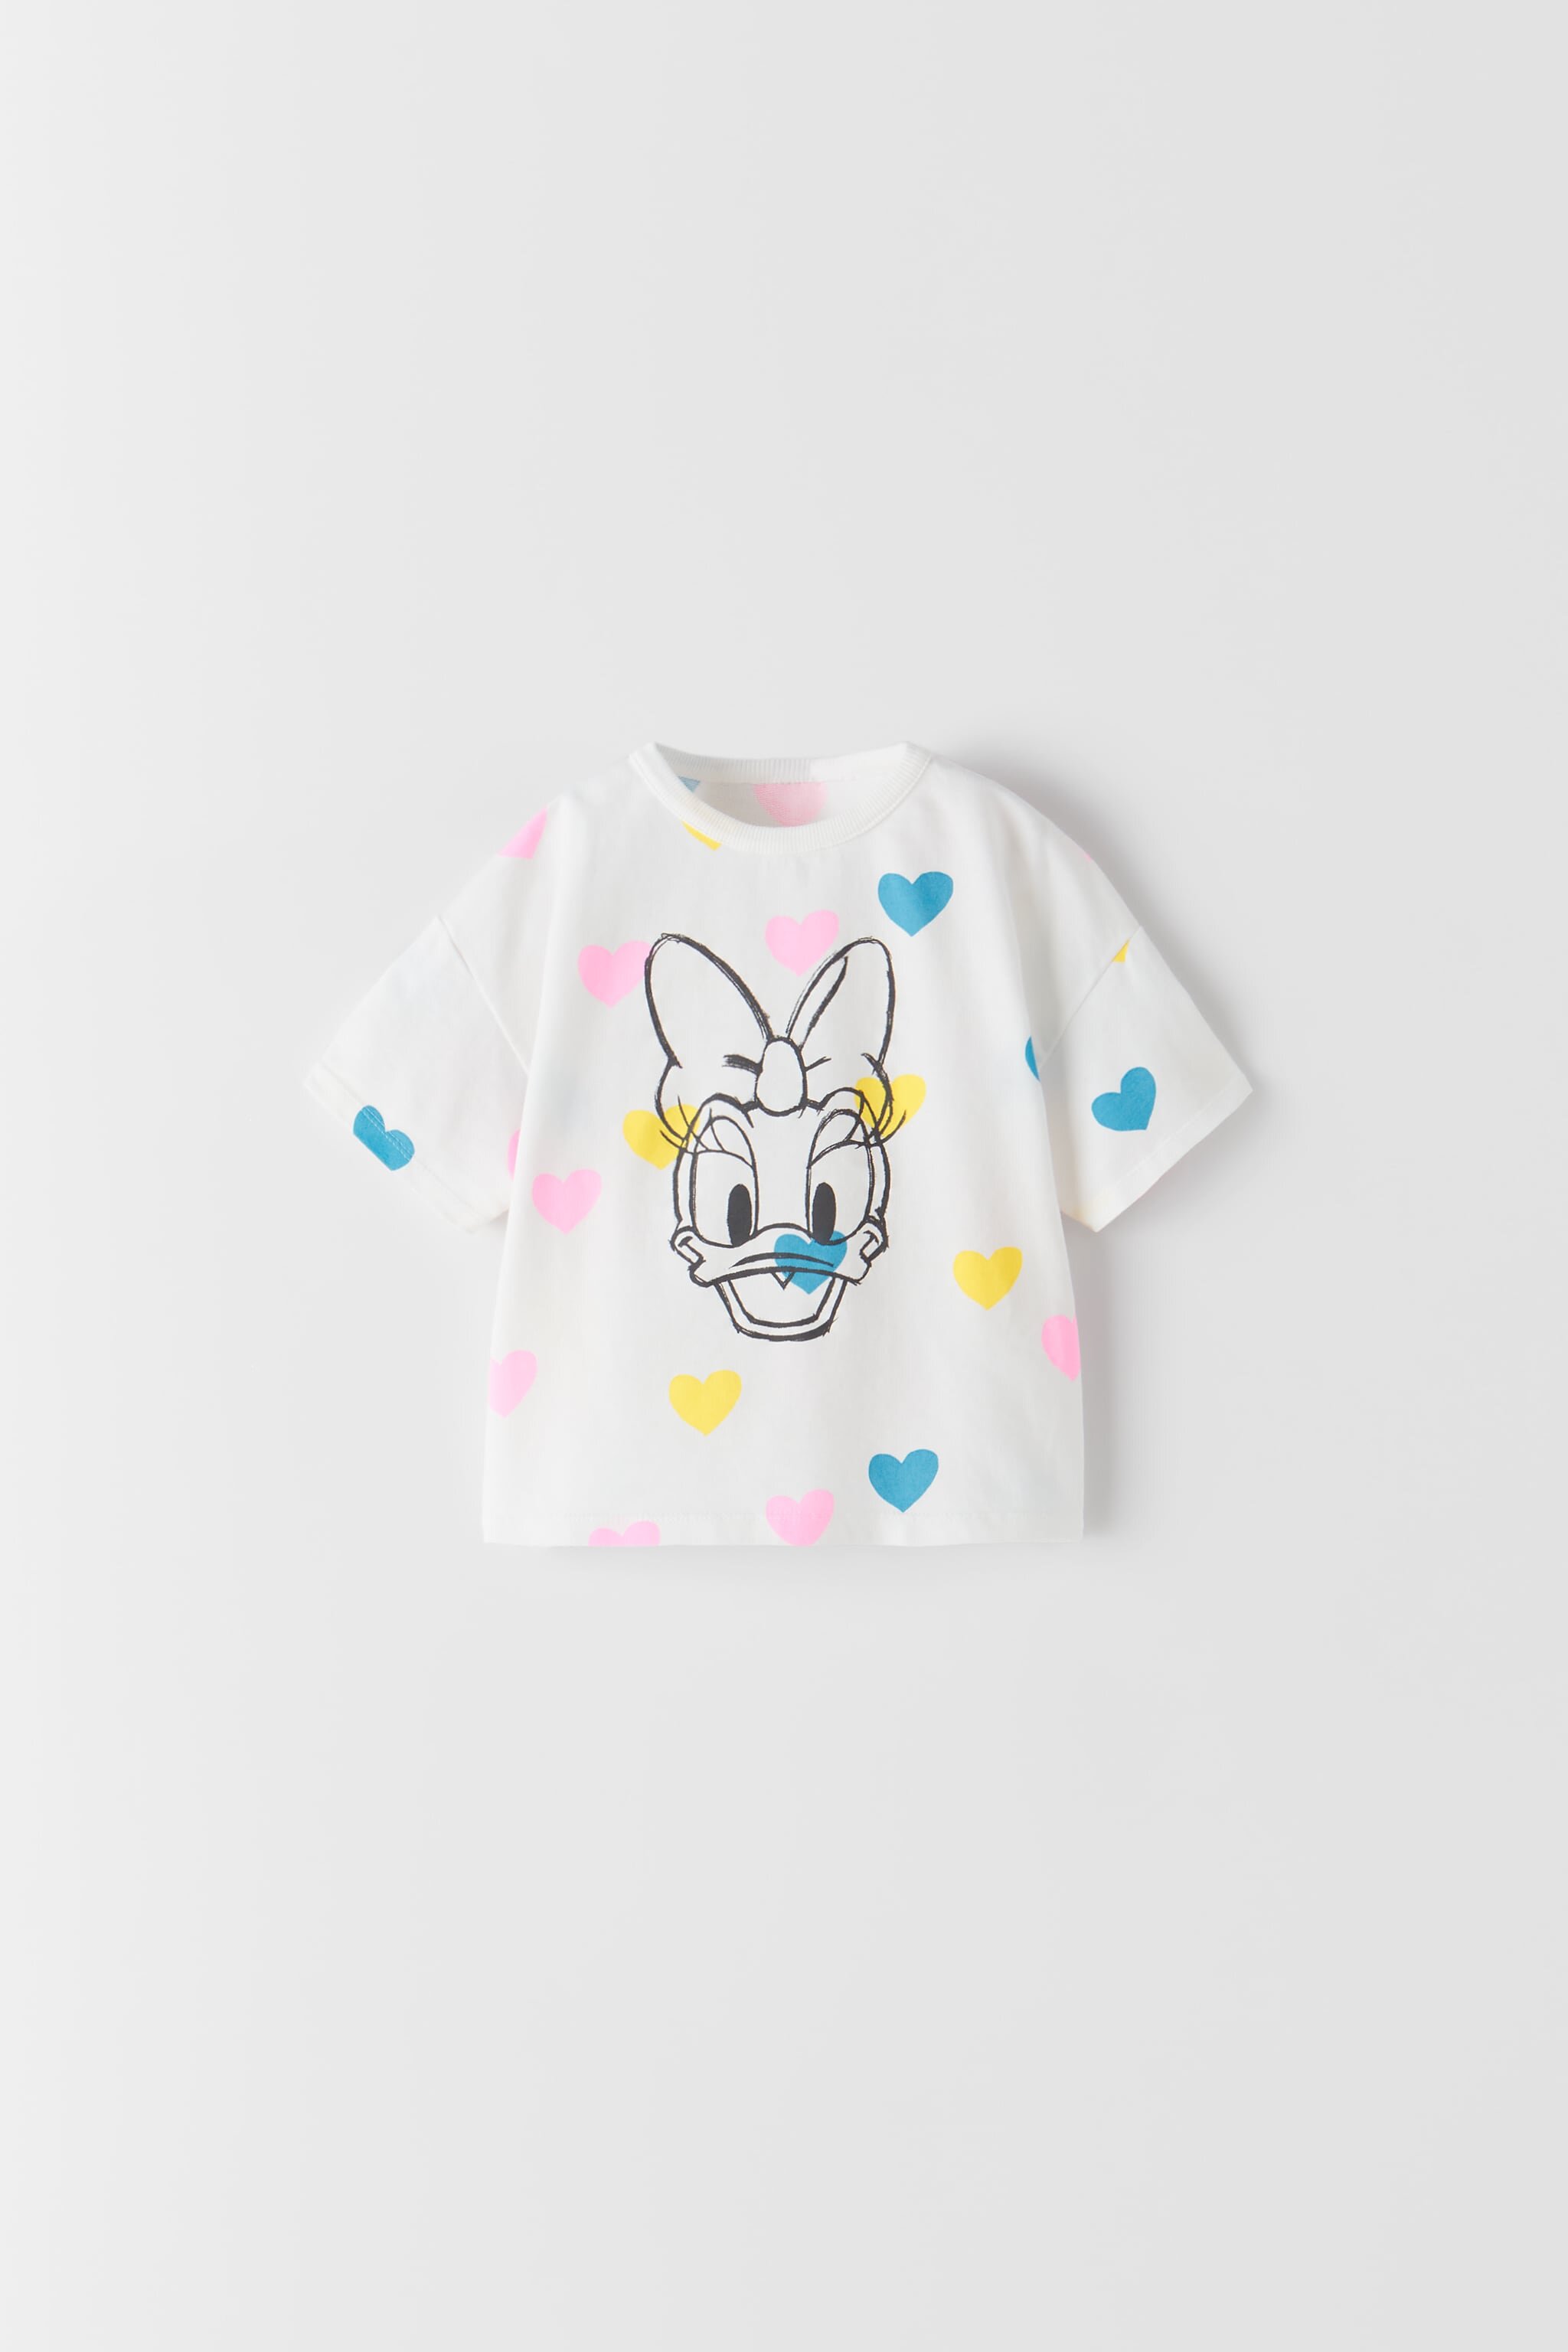 Disney Daisy T-Shirt, ₱595